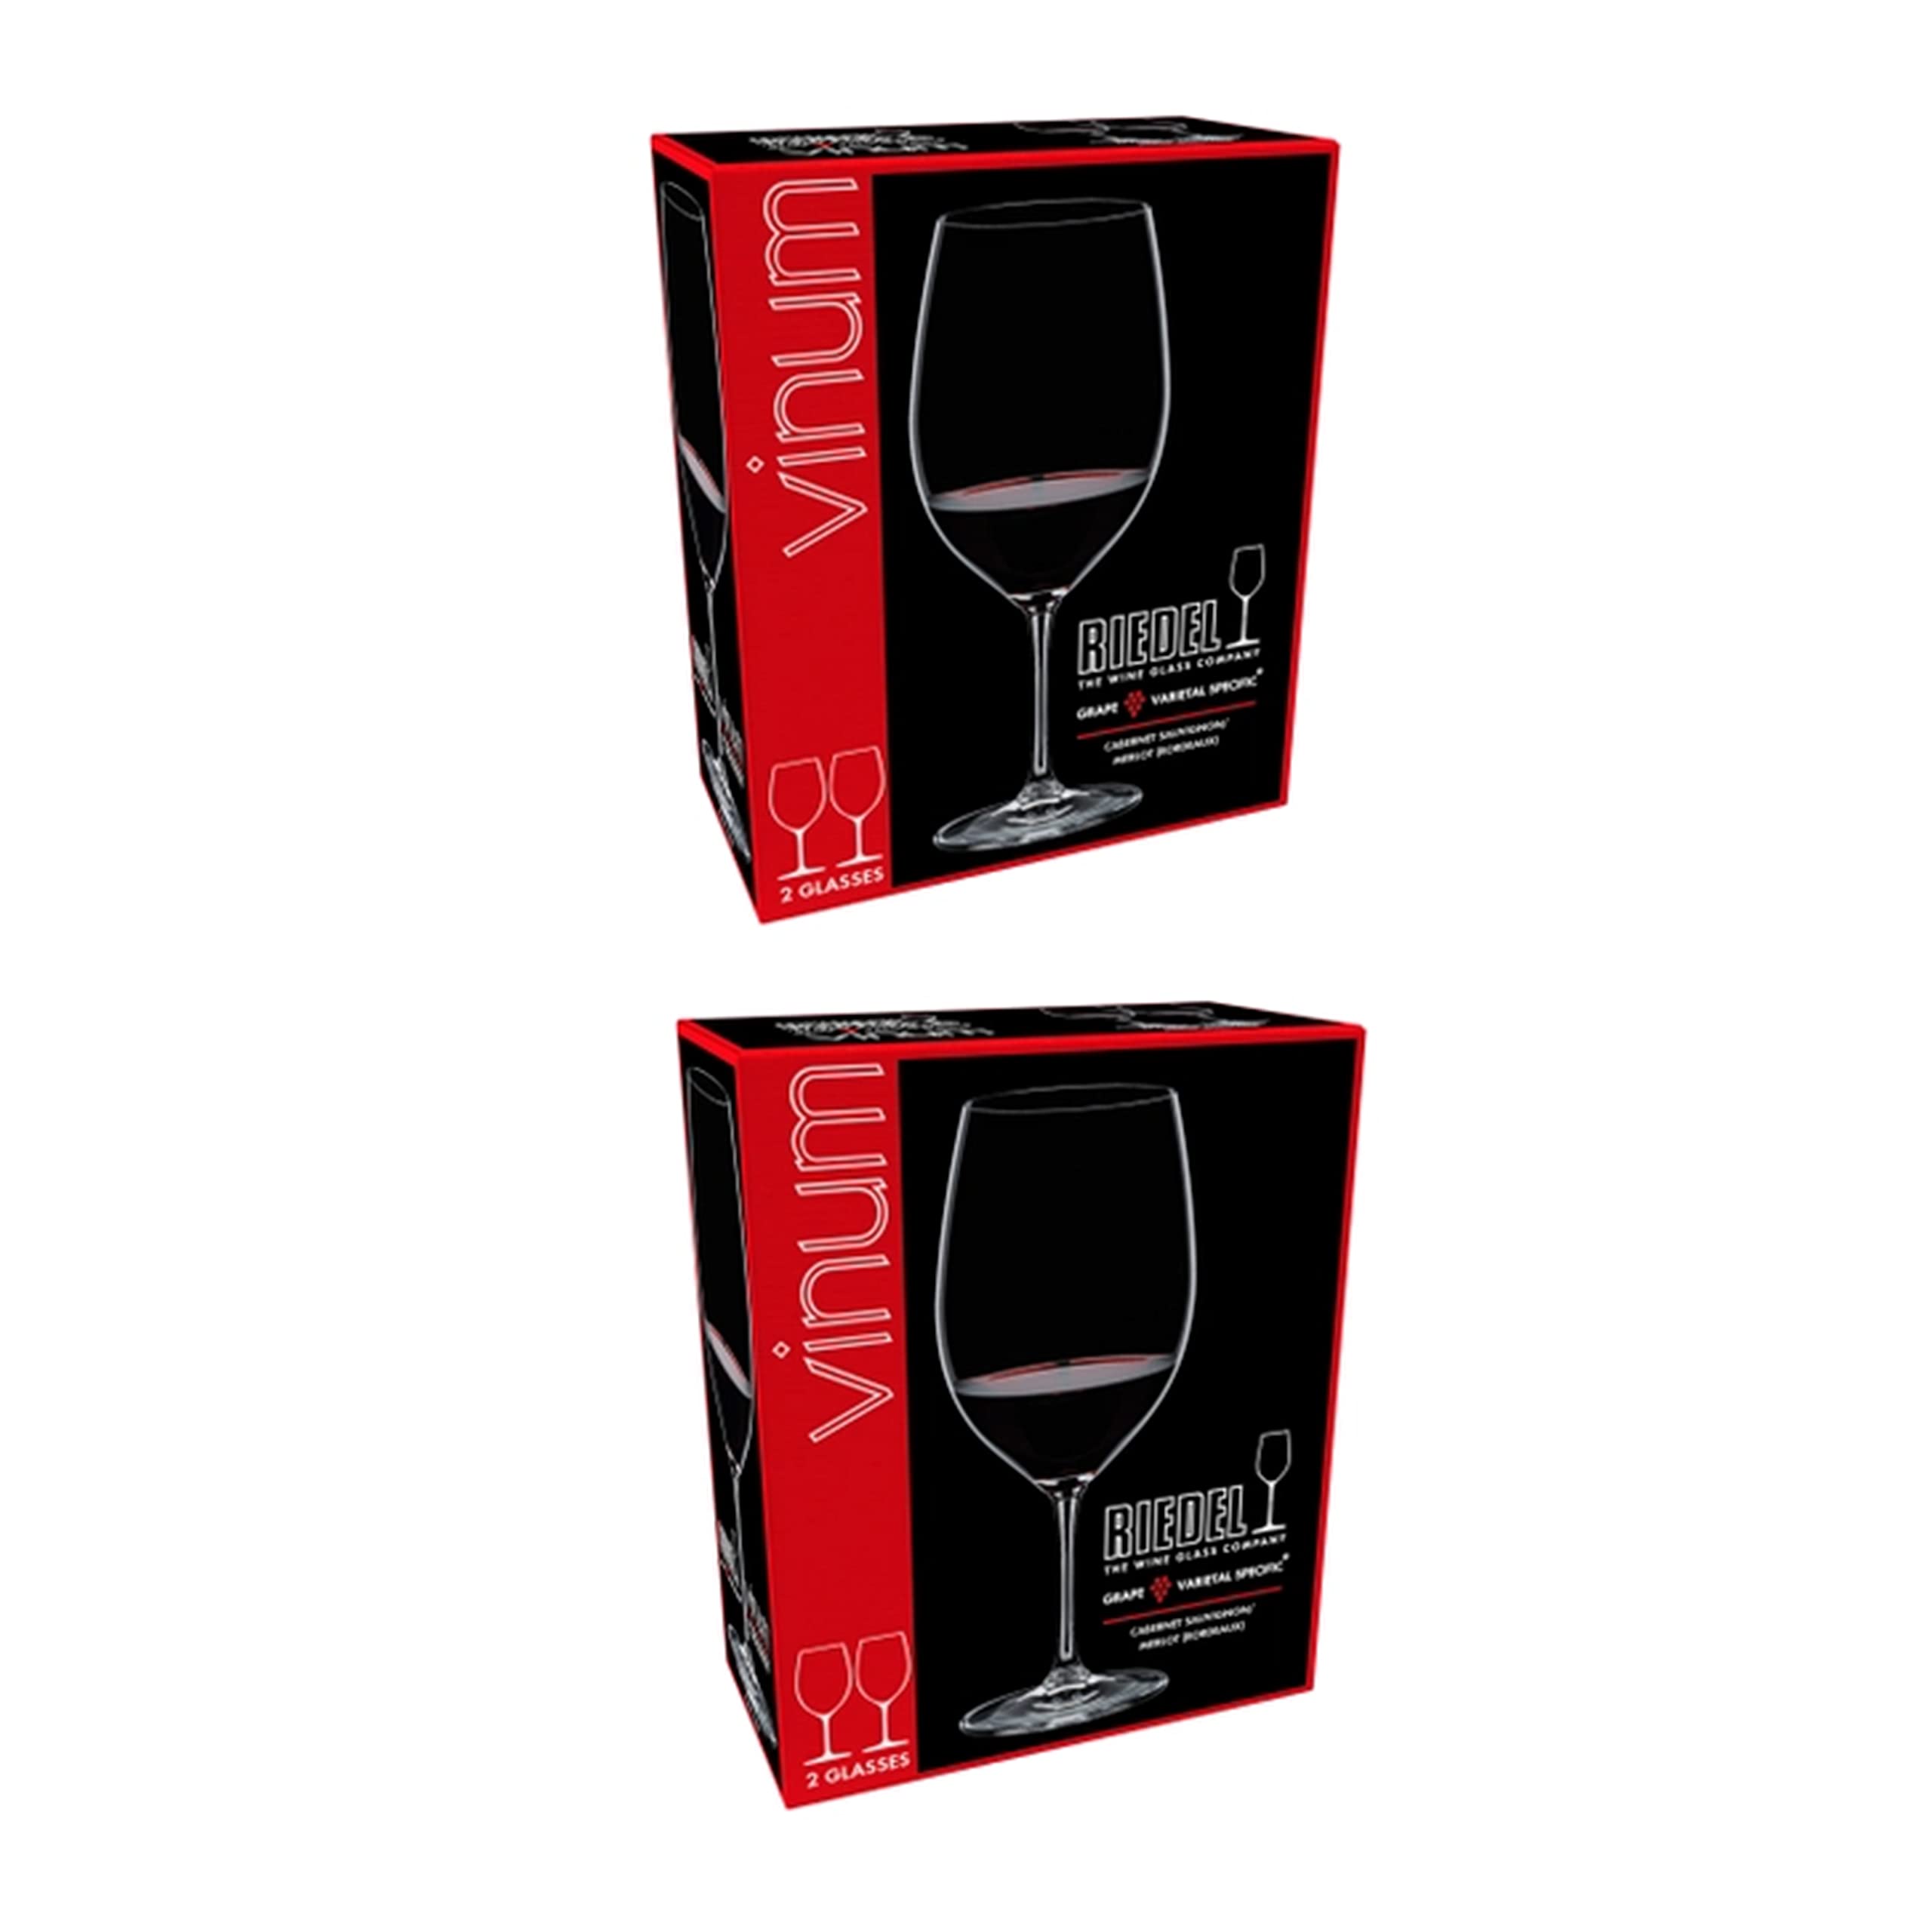 Riedel 4-Piece Vinum Cabernet Sauvignon/Merlot Wine Glass Set, 22 Oz